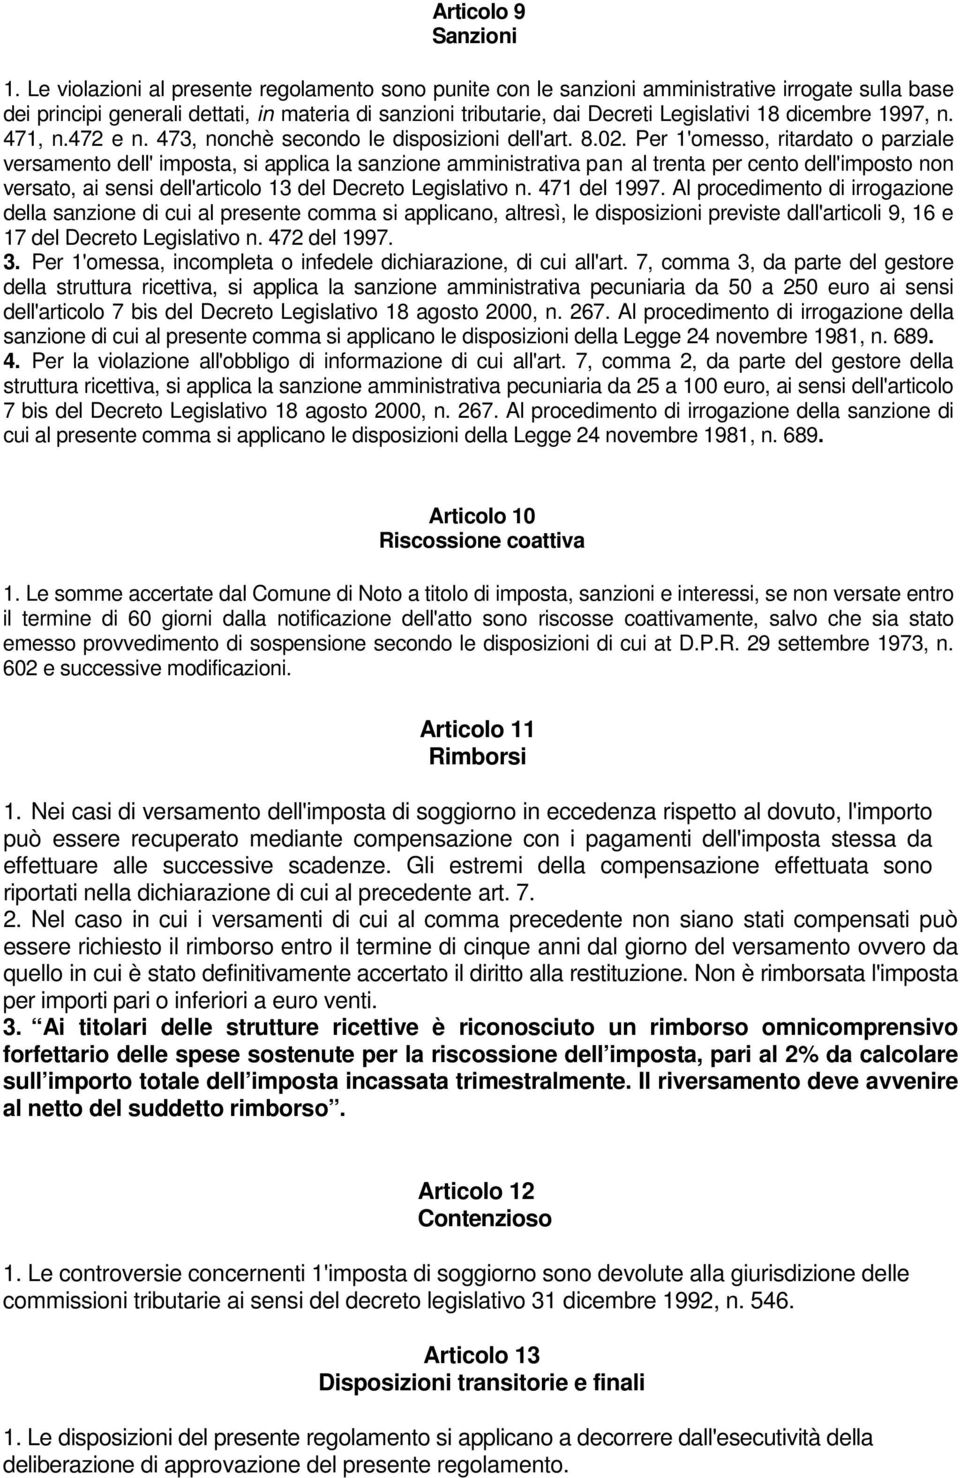 dicembre 1997, n. 471, n.472 e n. 473, nonchè secondo le disposizioni dell'art. 8.02.